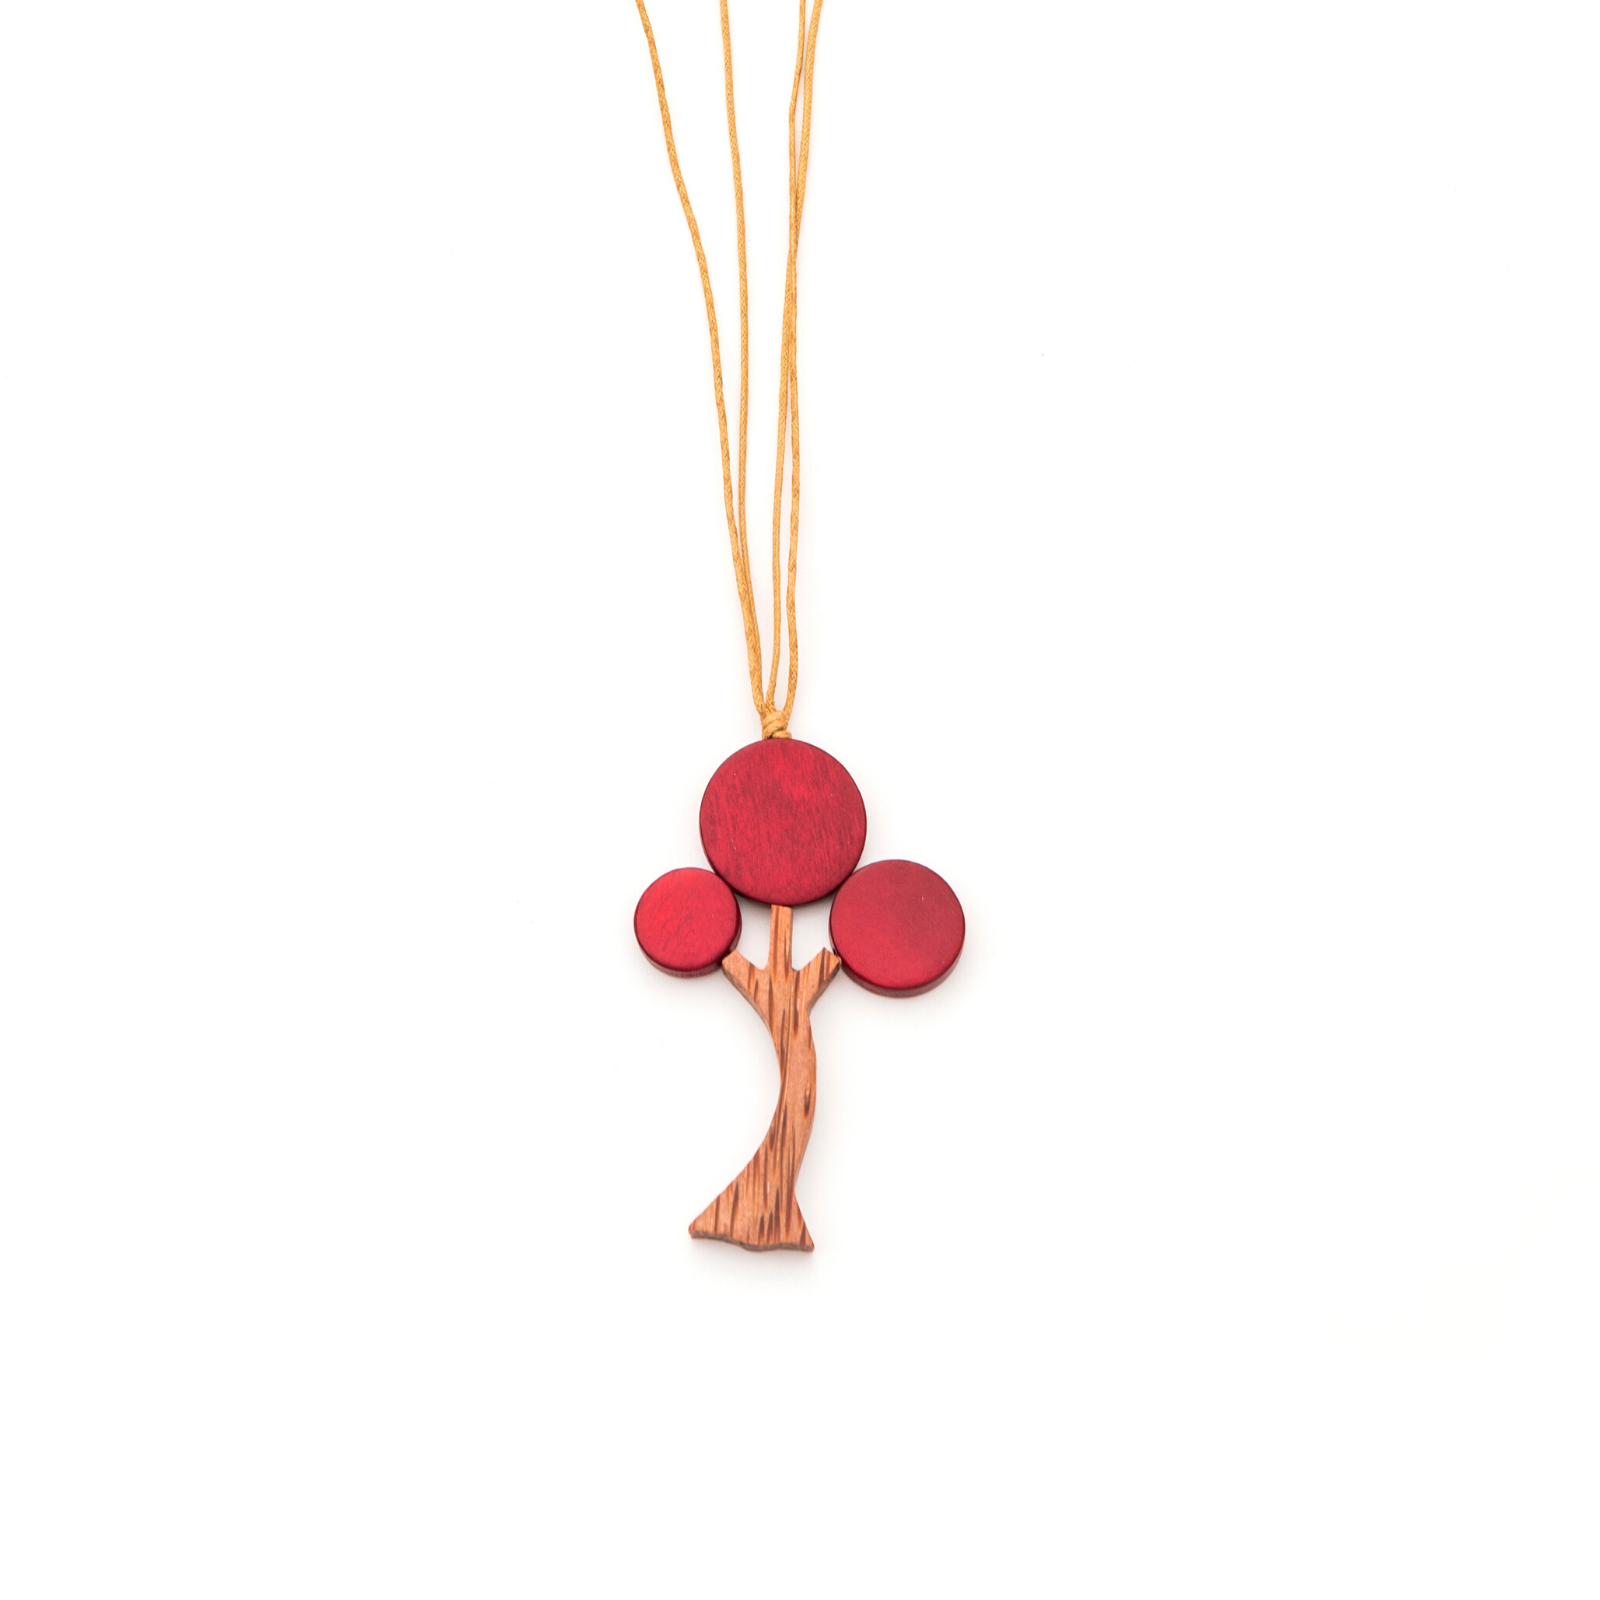 Cherry Tree necklace